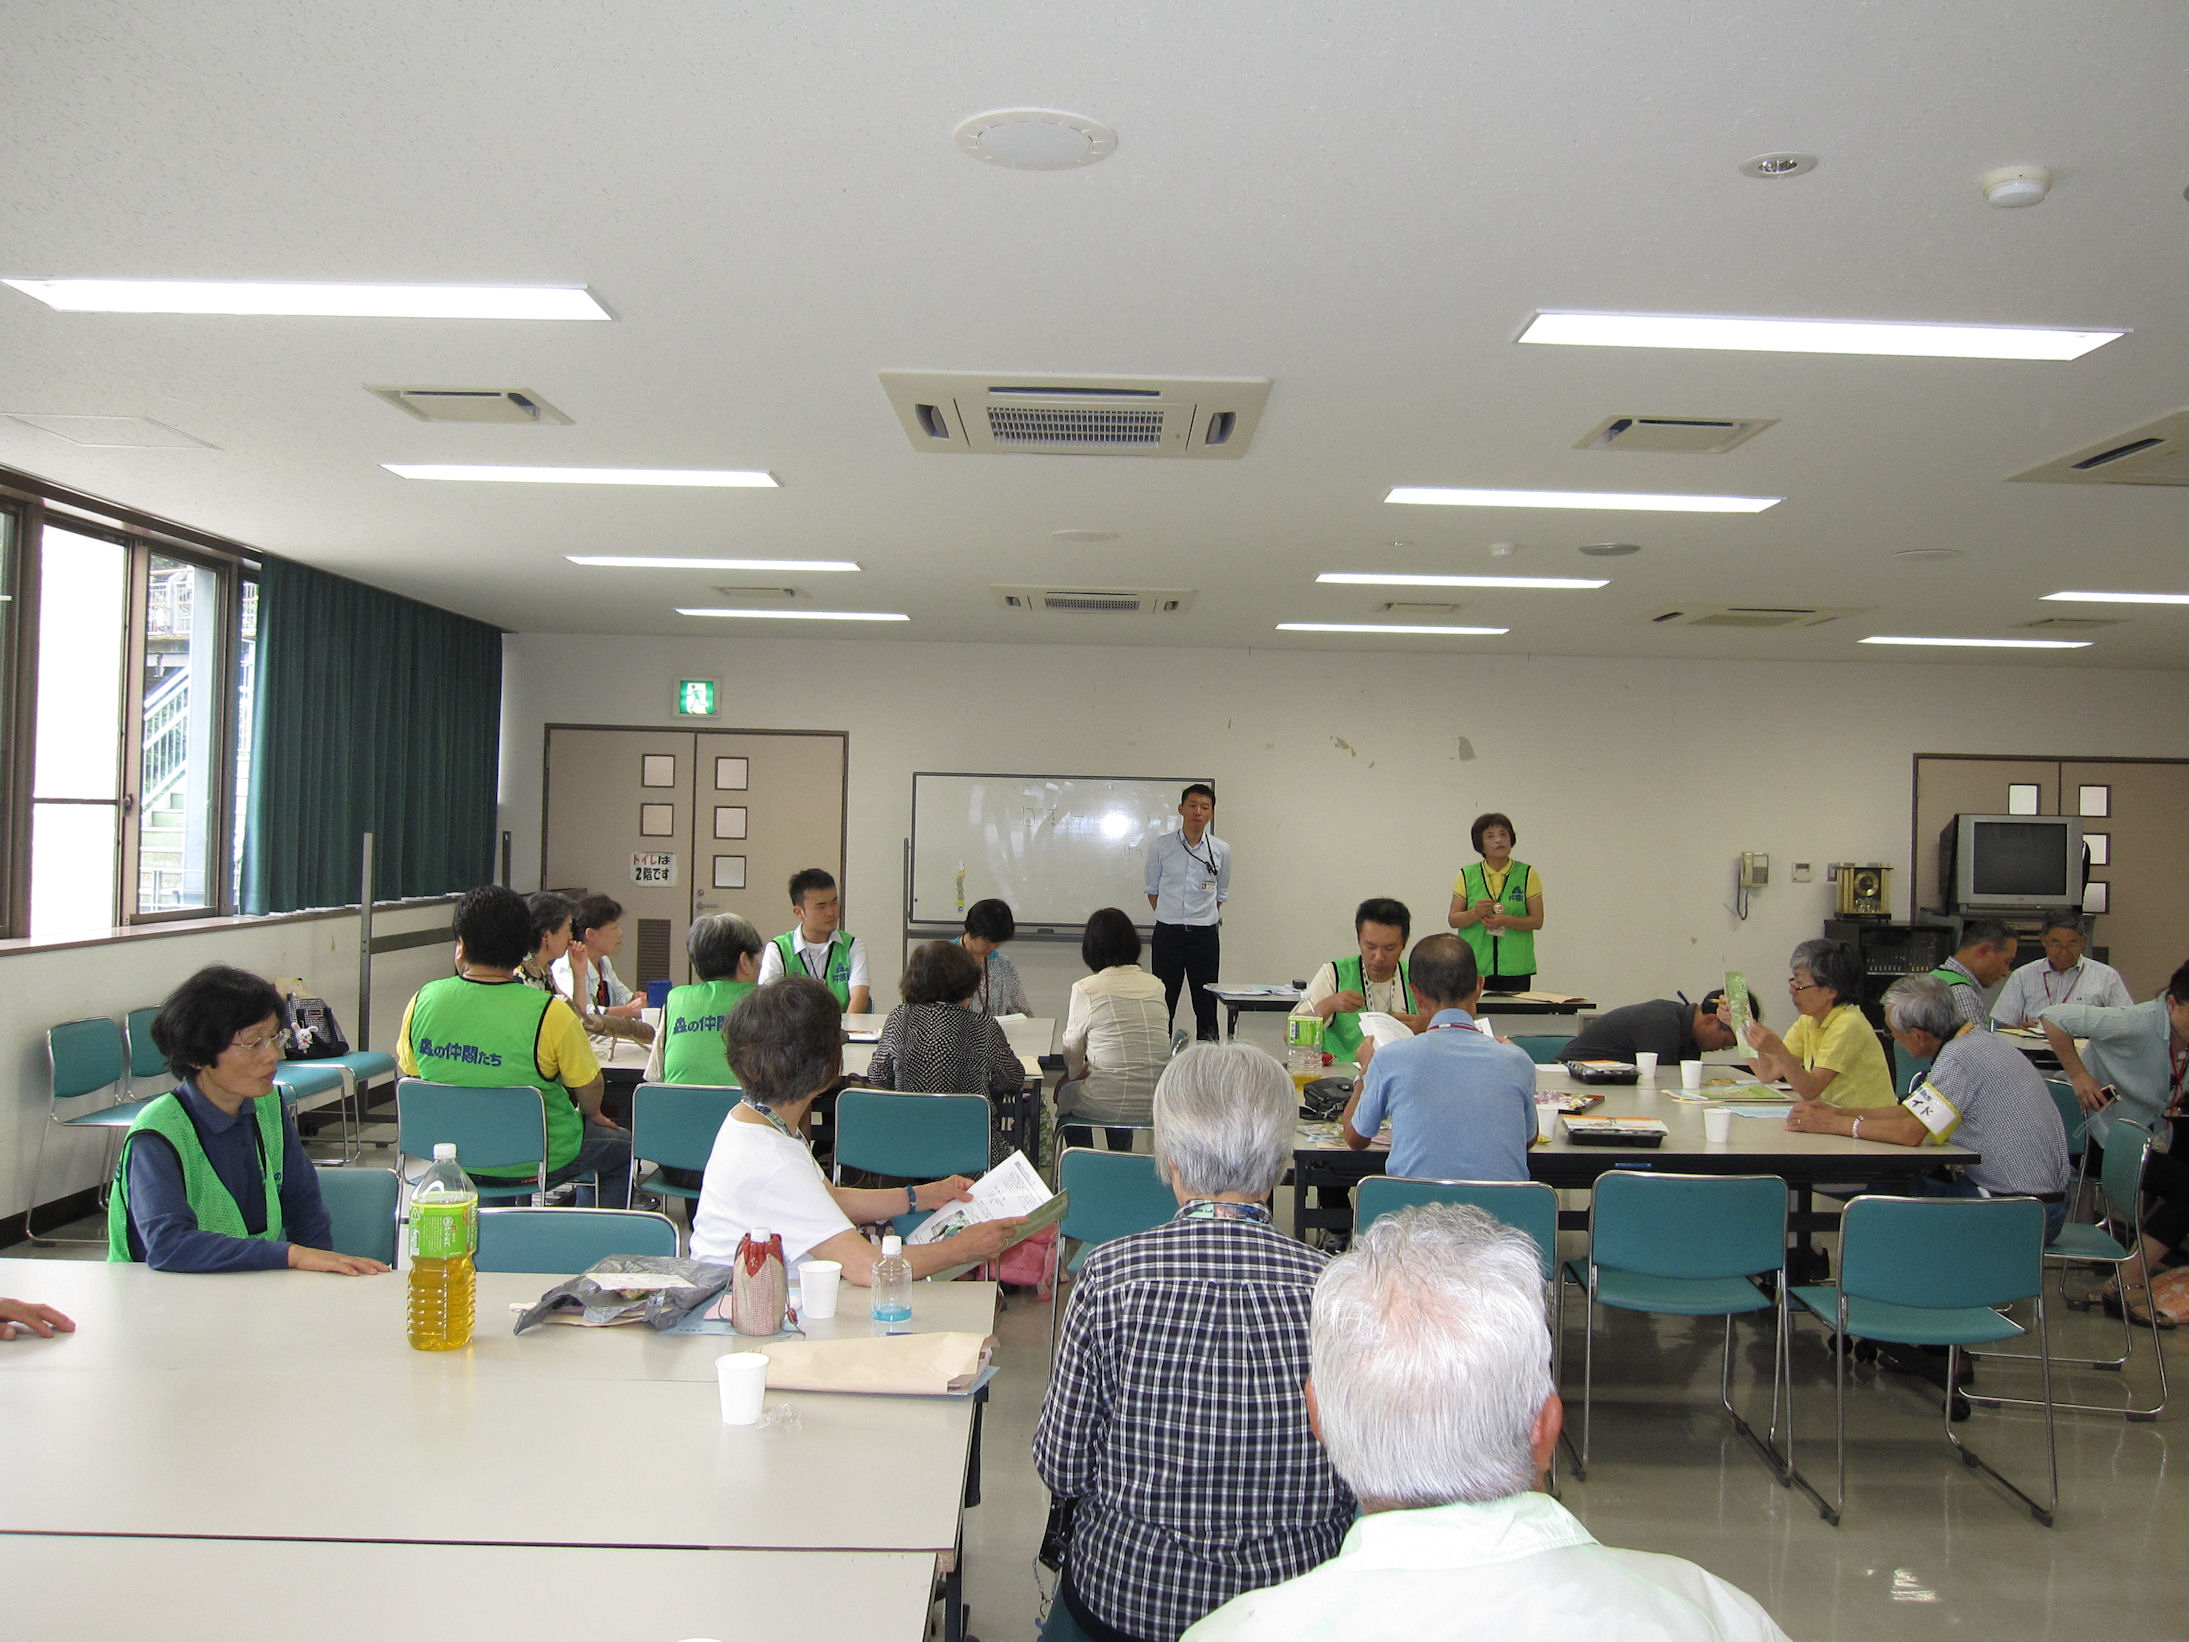 http://www.itozu-zoo.jp/volunteer/blog/images/meeting.jpg